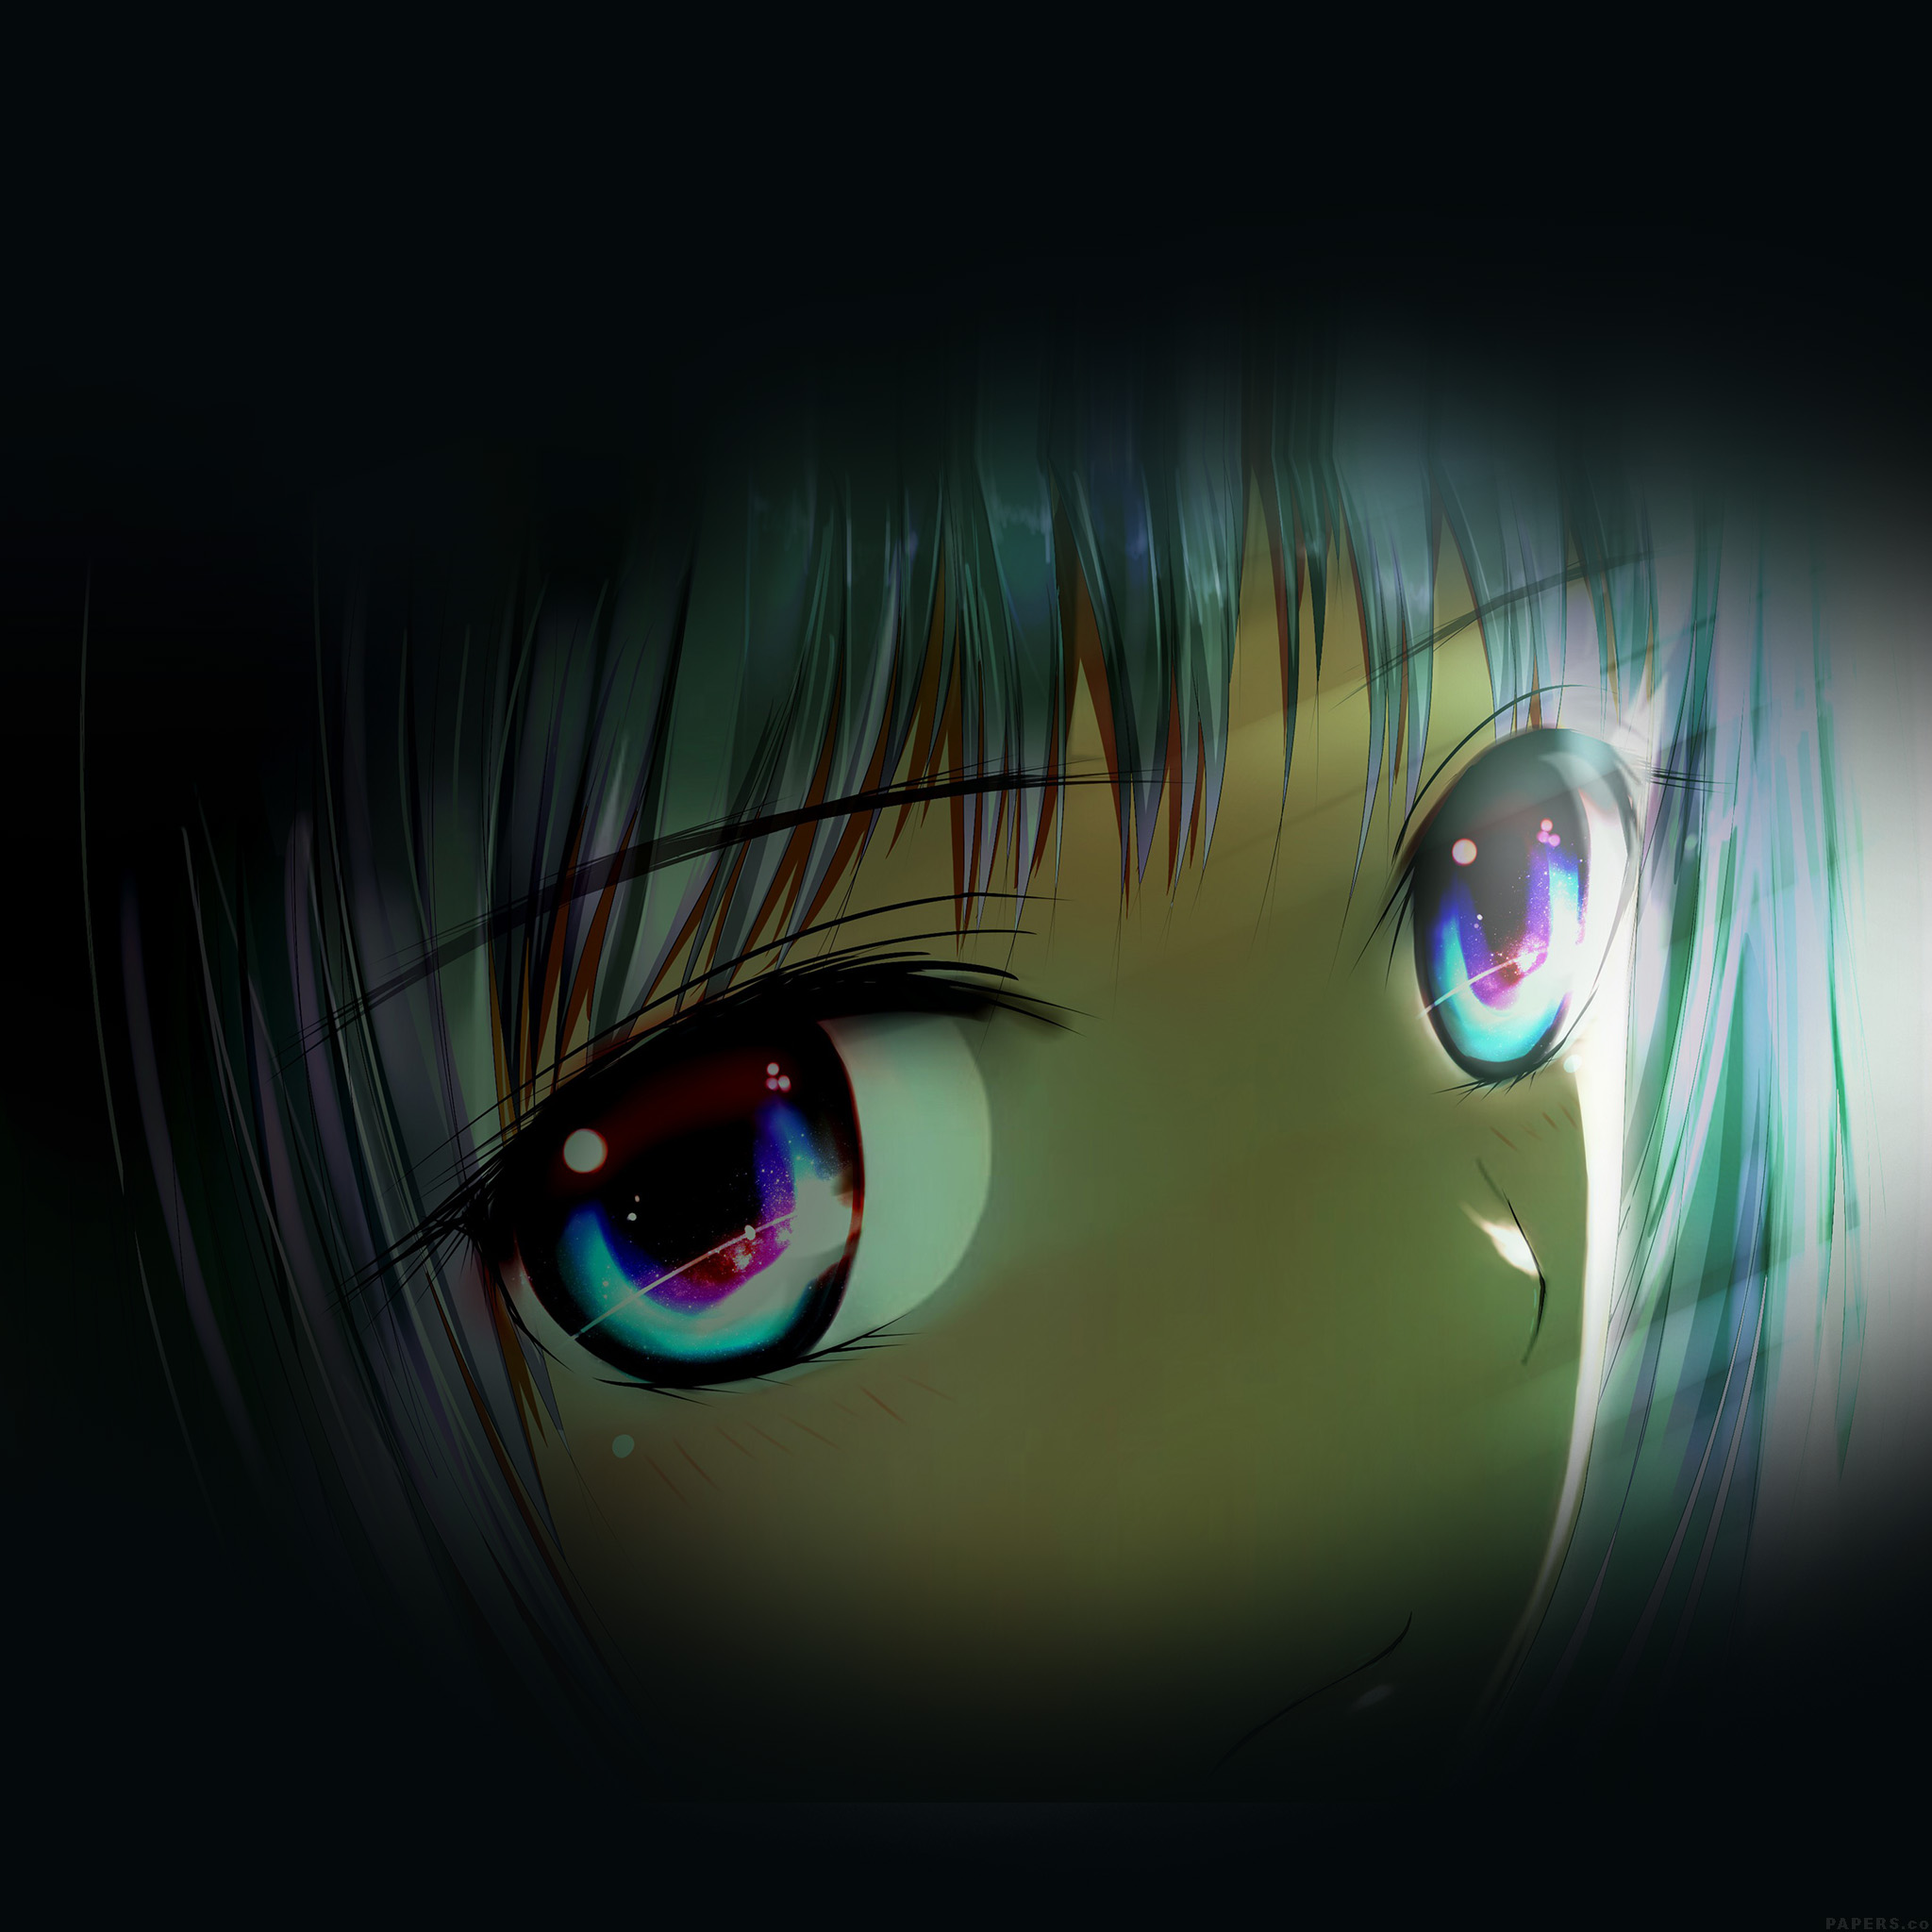 anime wallpaper für ipad,grün,auge,blau,dunkelheit,iris